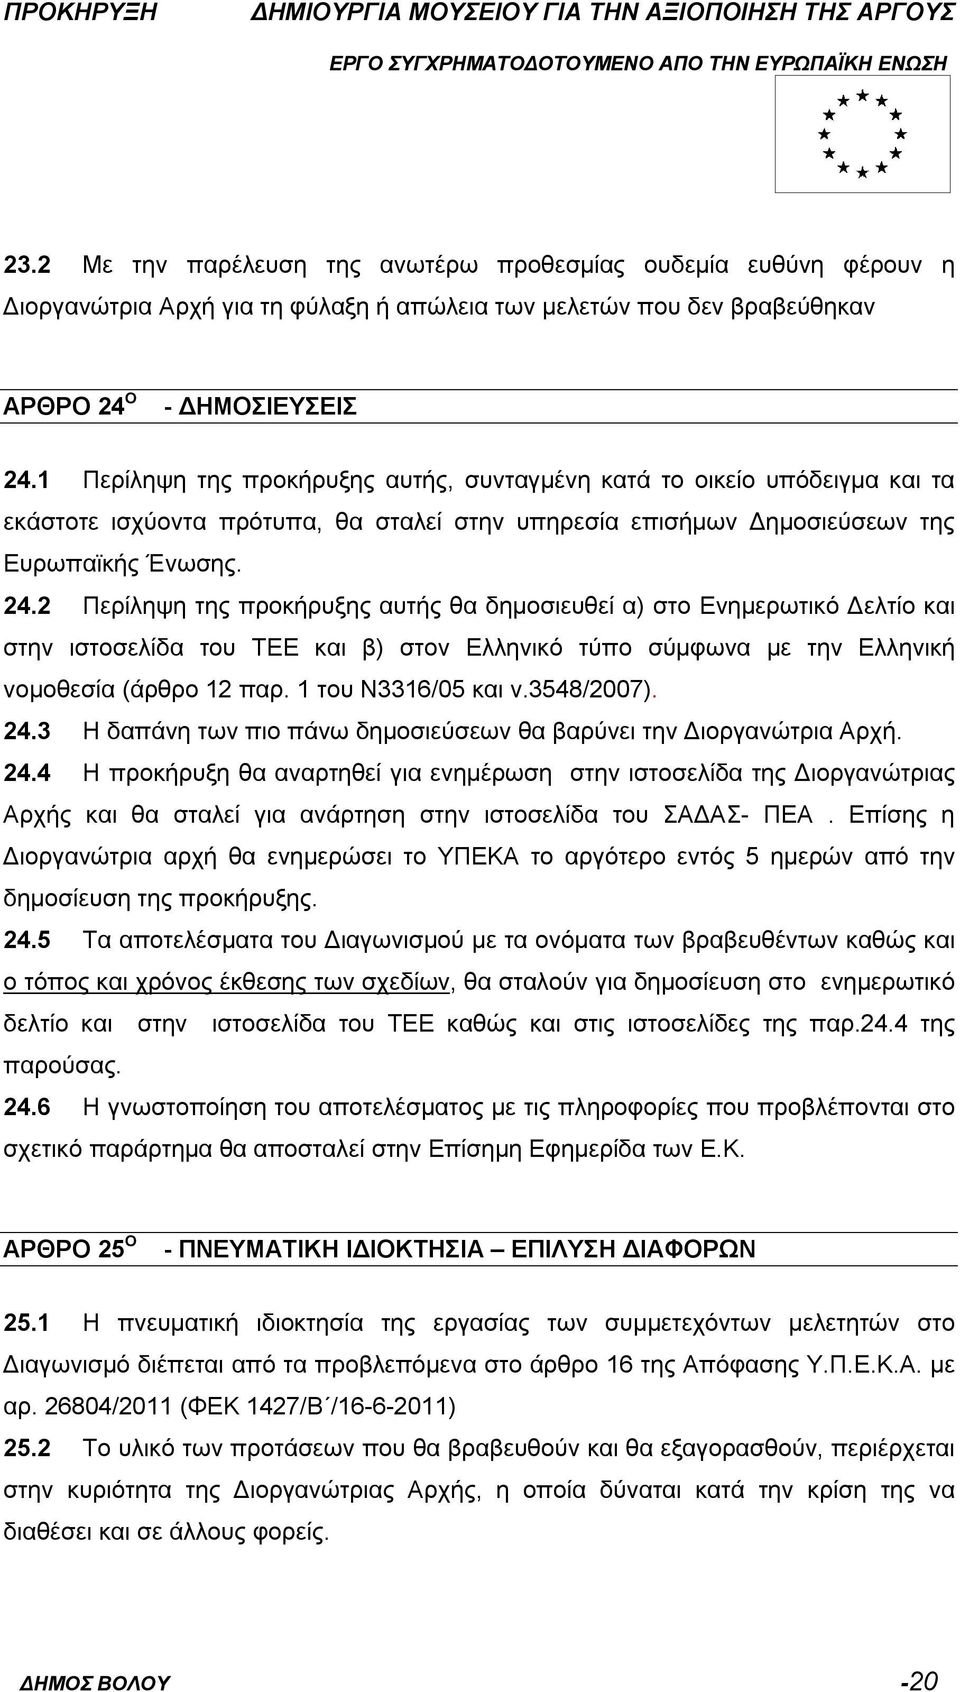 2 Περίληψη της προκήρυξης αυτής θα δημοσιευθεί α) στο Ενημερωτικό Δελτίο και στην ιστοσελίδα του ΤΕΕ και β) στον Ελληνικό τύπο σύμφωνα με την Ελληνική νομοθεσία (άρθρο 12 παρ. 1 του Ν3316/05 και ν.